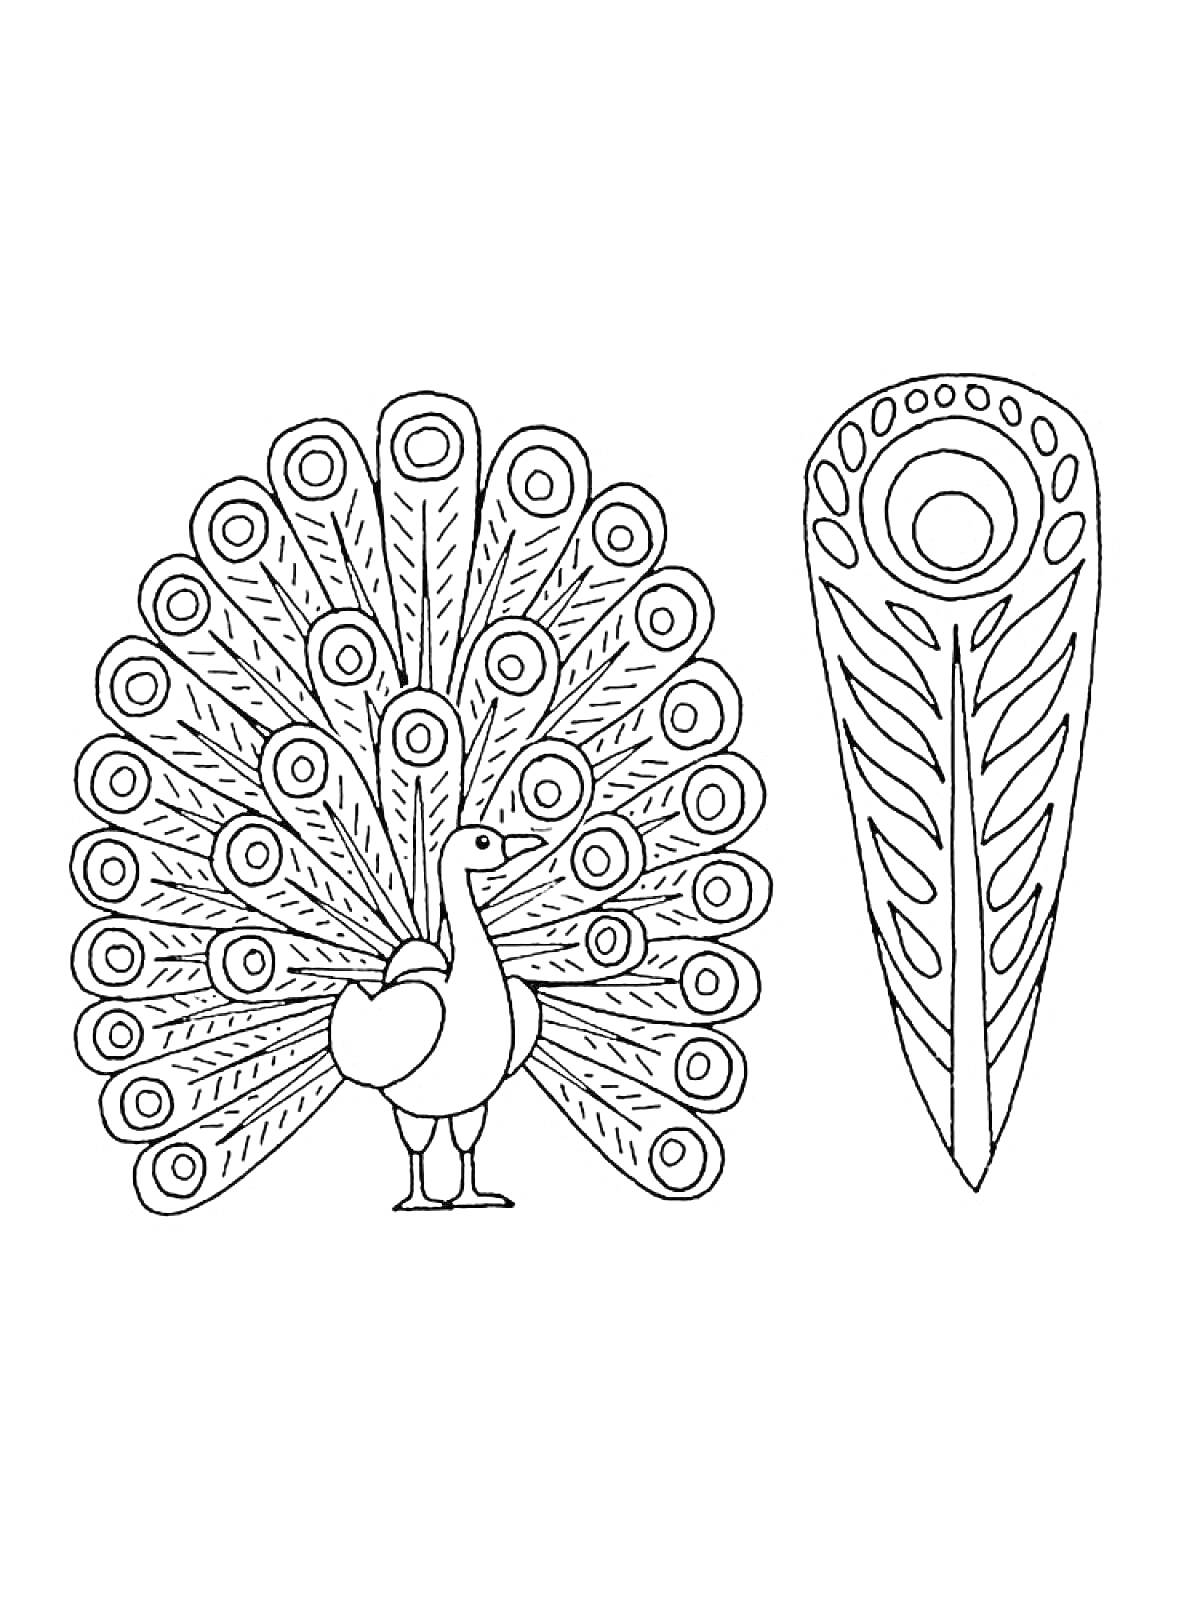 Раскраска Павлин с раскрытым хвостом и одиночное павлинье перо